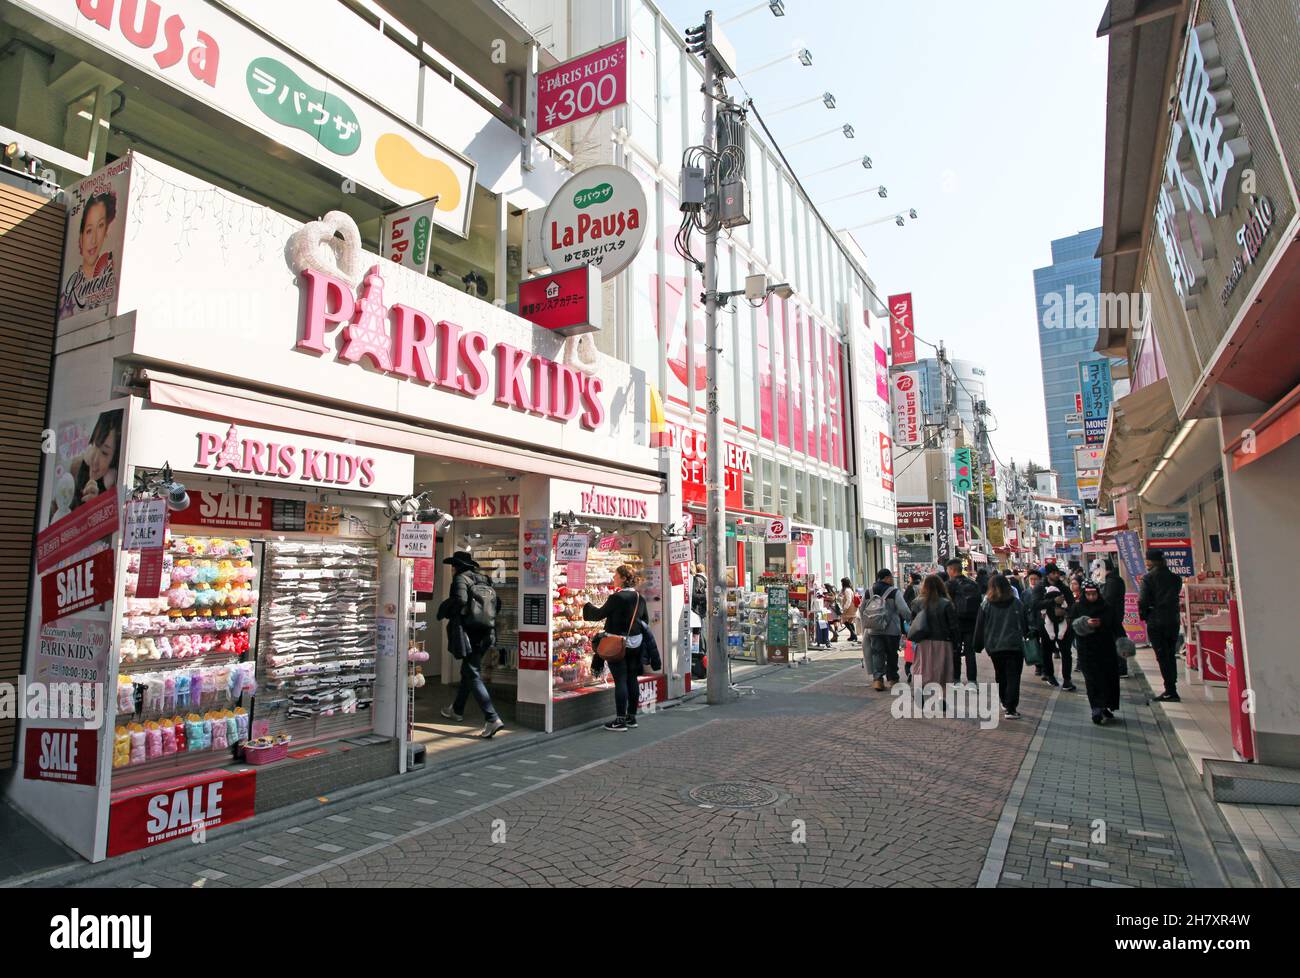 Takeshita Street ou Takeshita-dori, une rue animée dans la partie Harajuku de Tokyo au Japon, vendant la mode dynamique et extrême, la nourriture, et plus encore. Banque D'Images